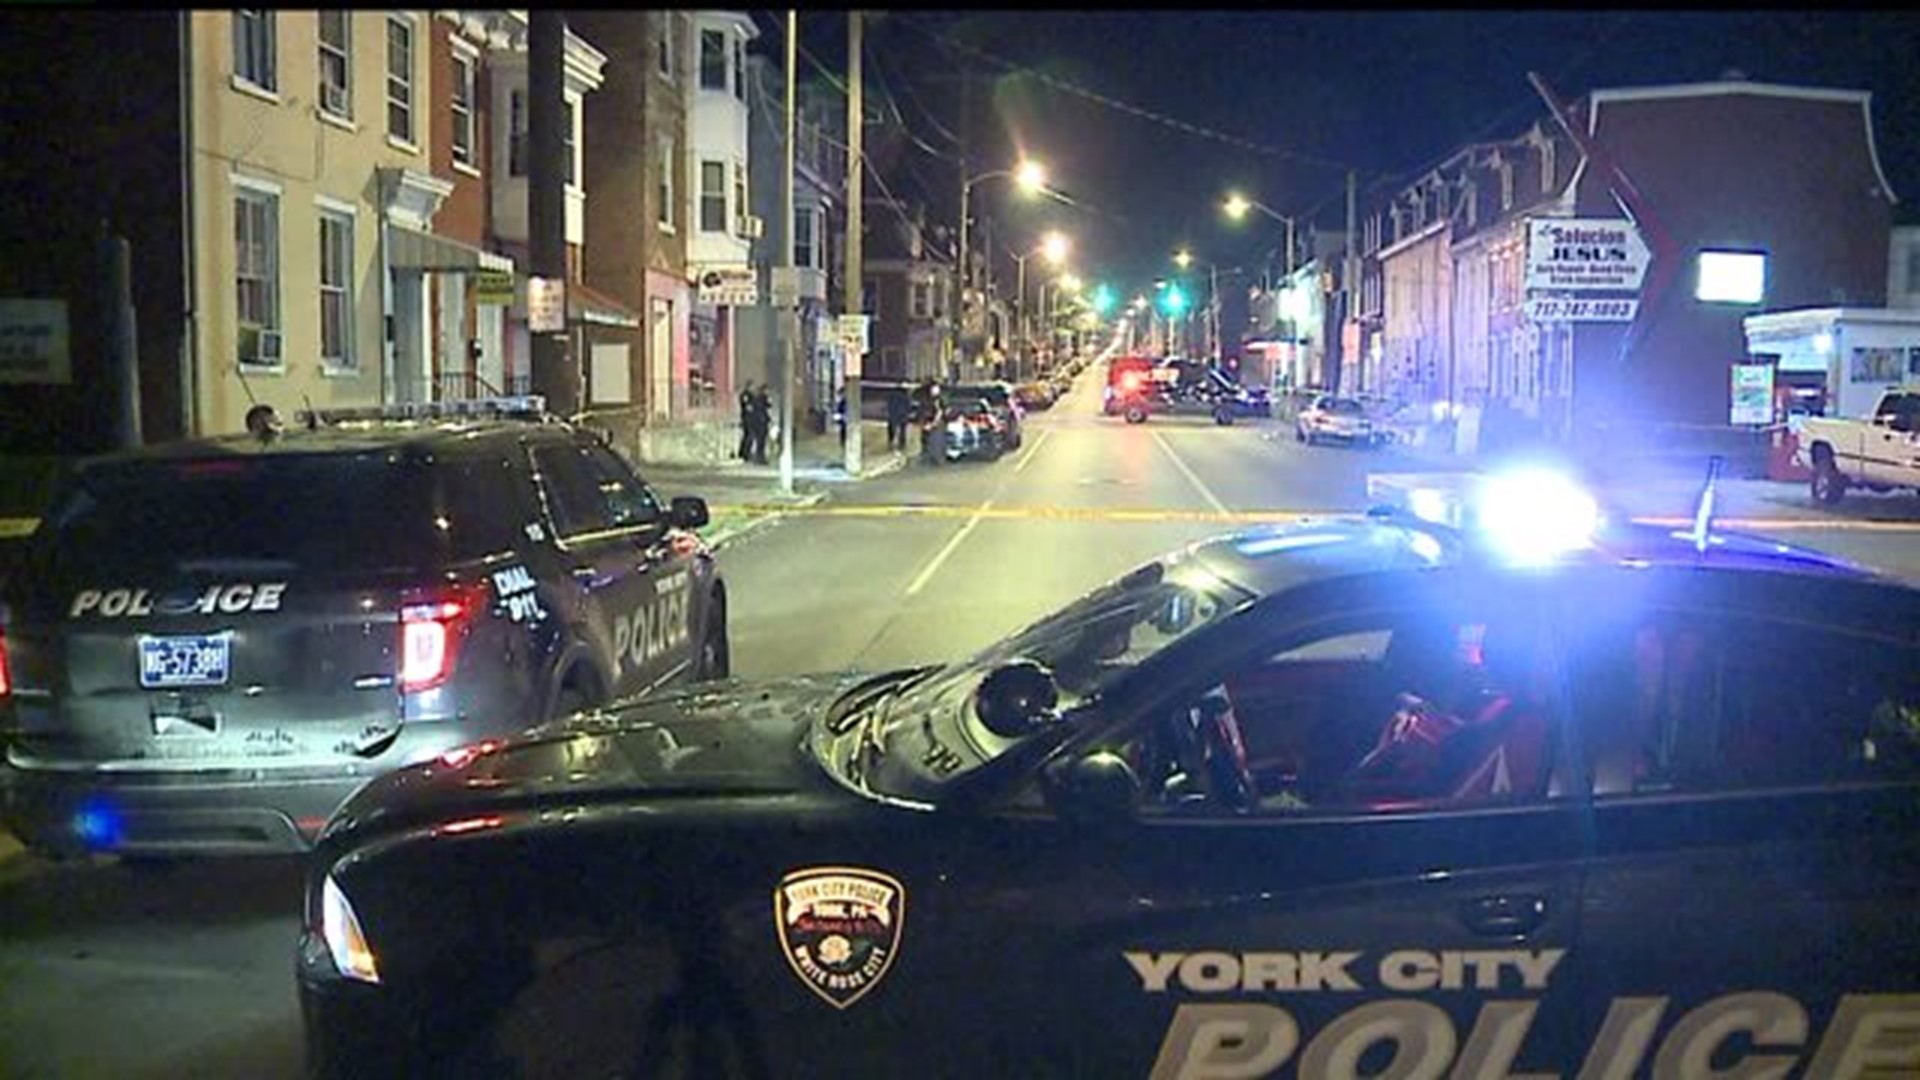 One man injured following shooting in York